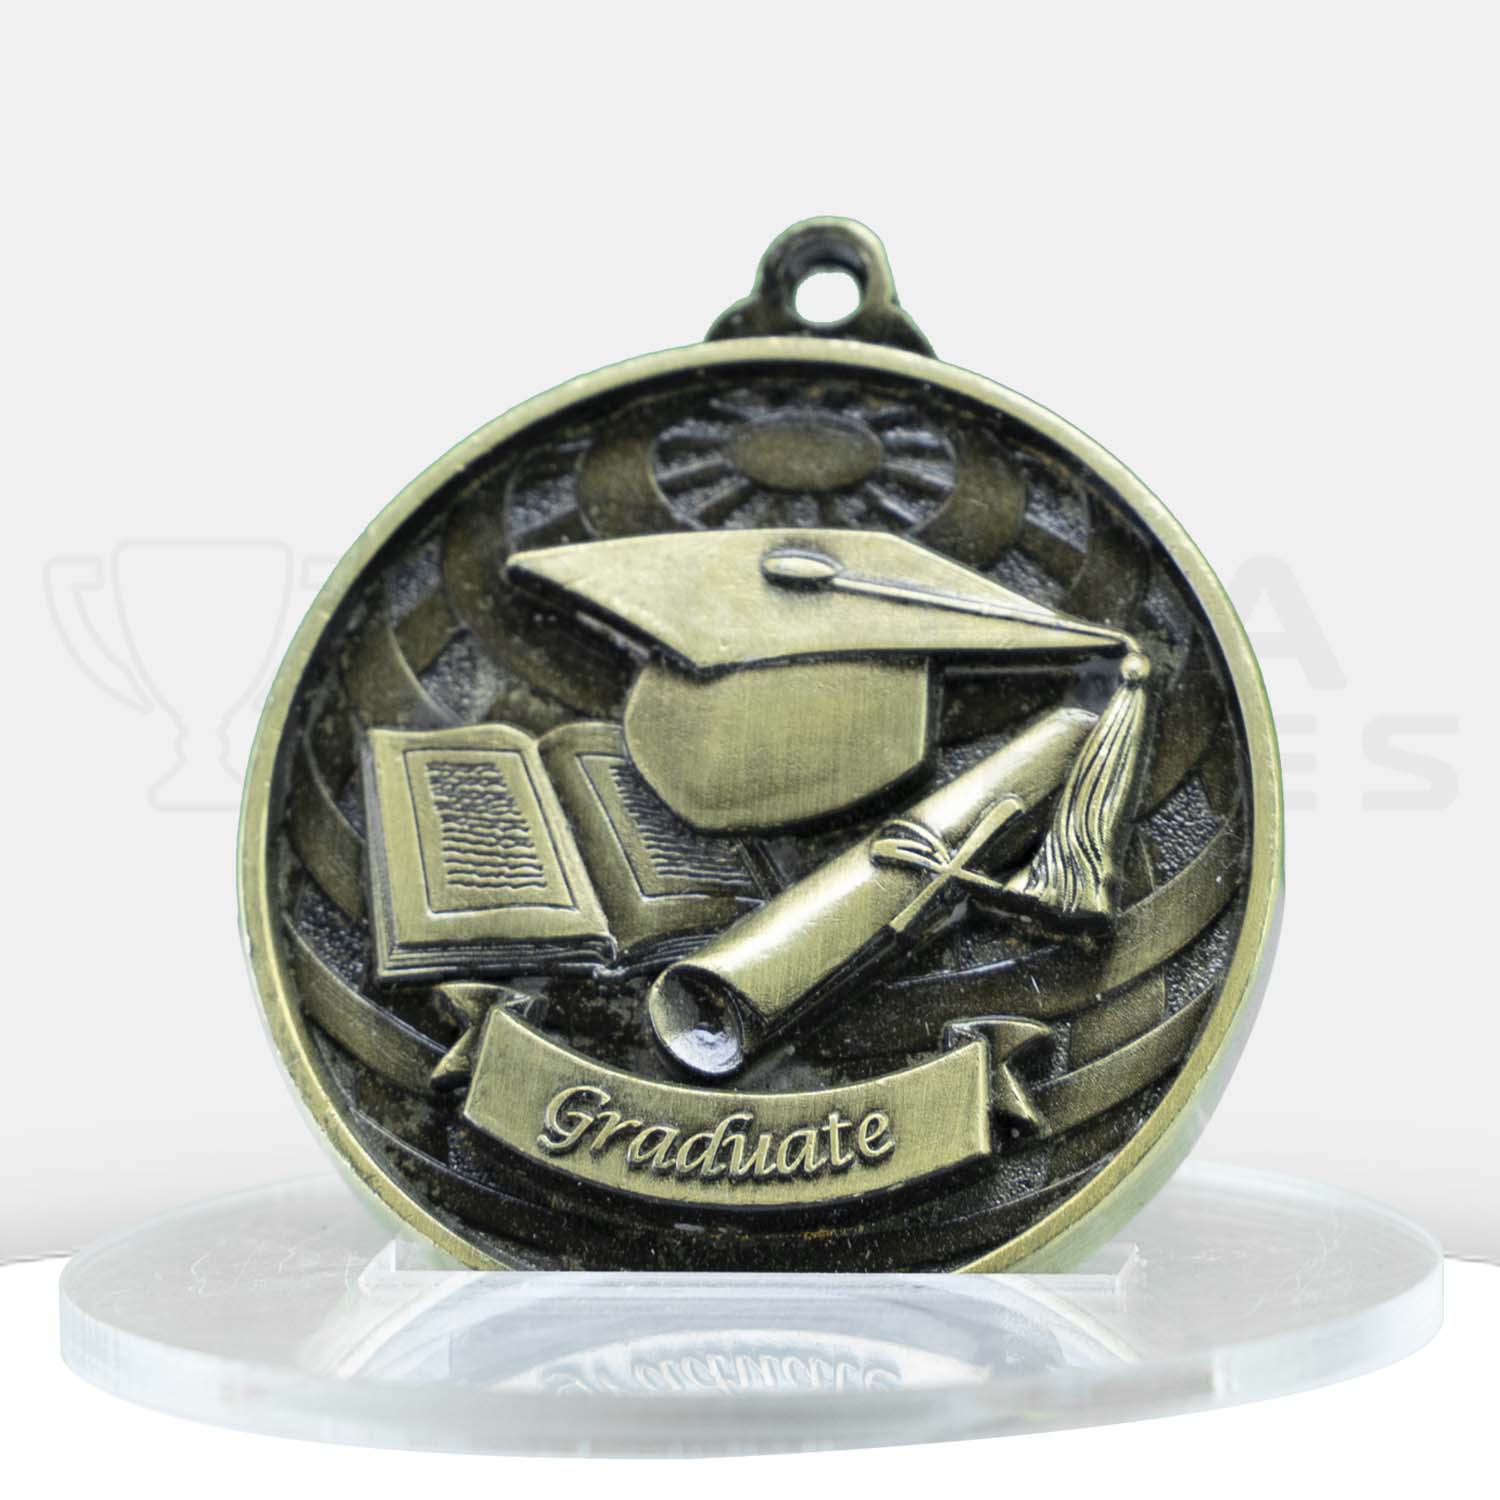 global-medal-graduate-gold-front